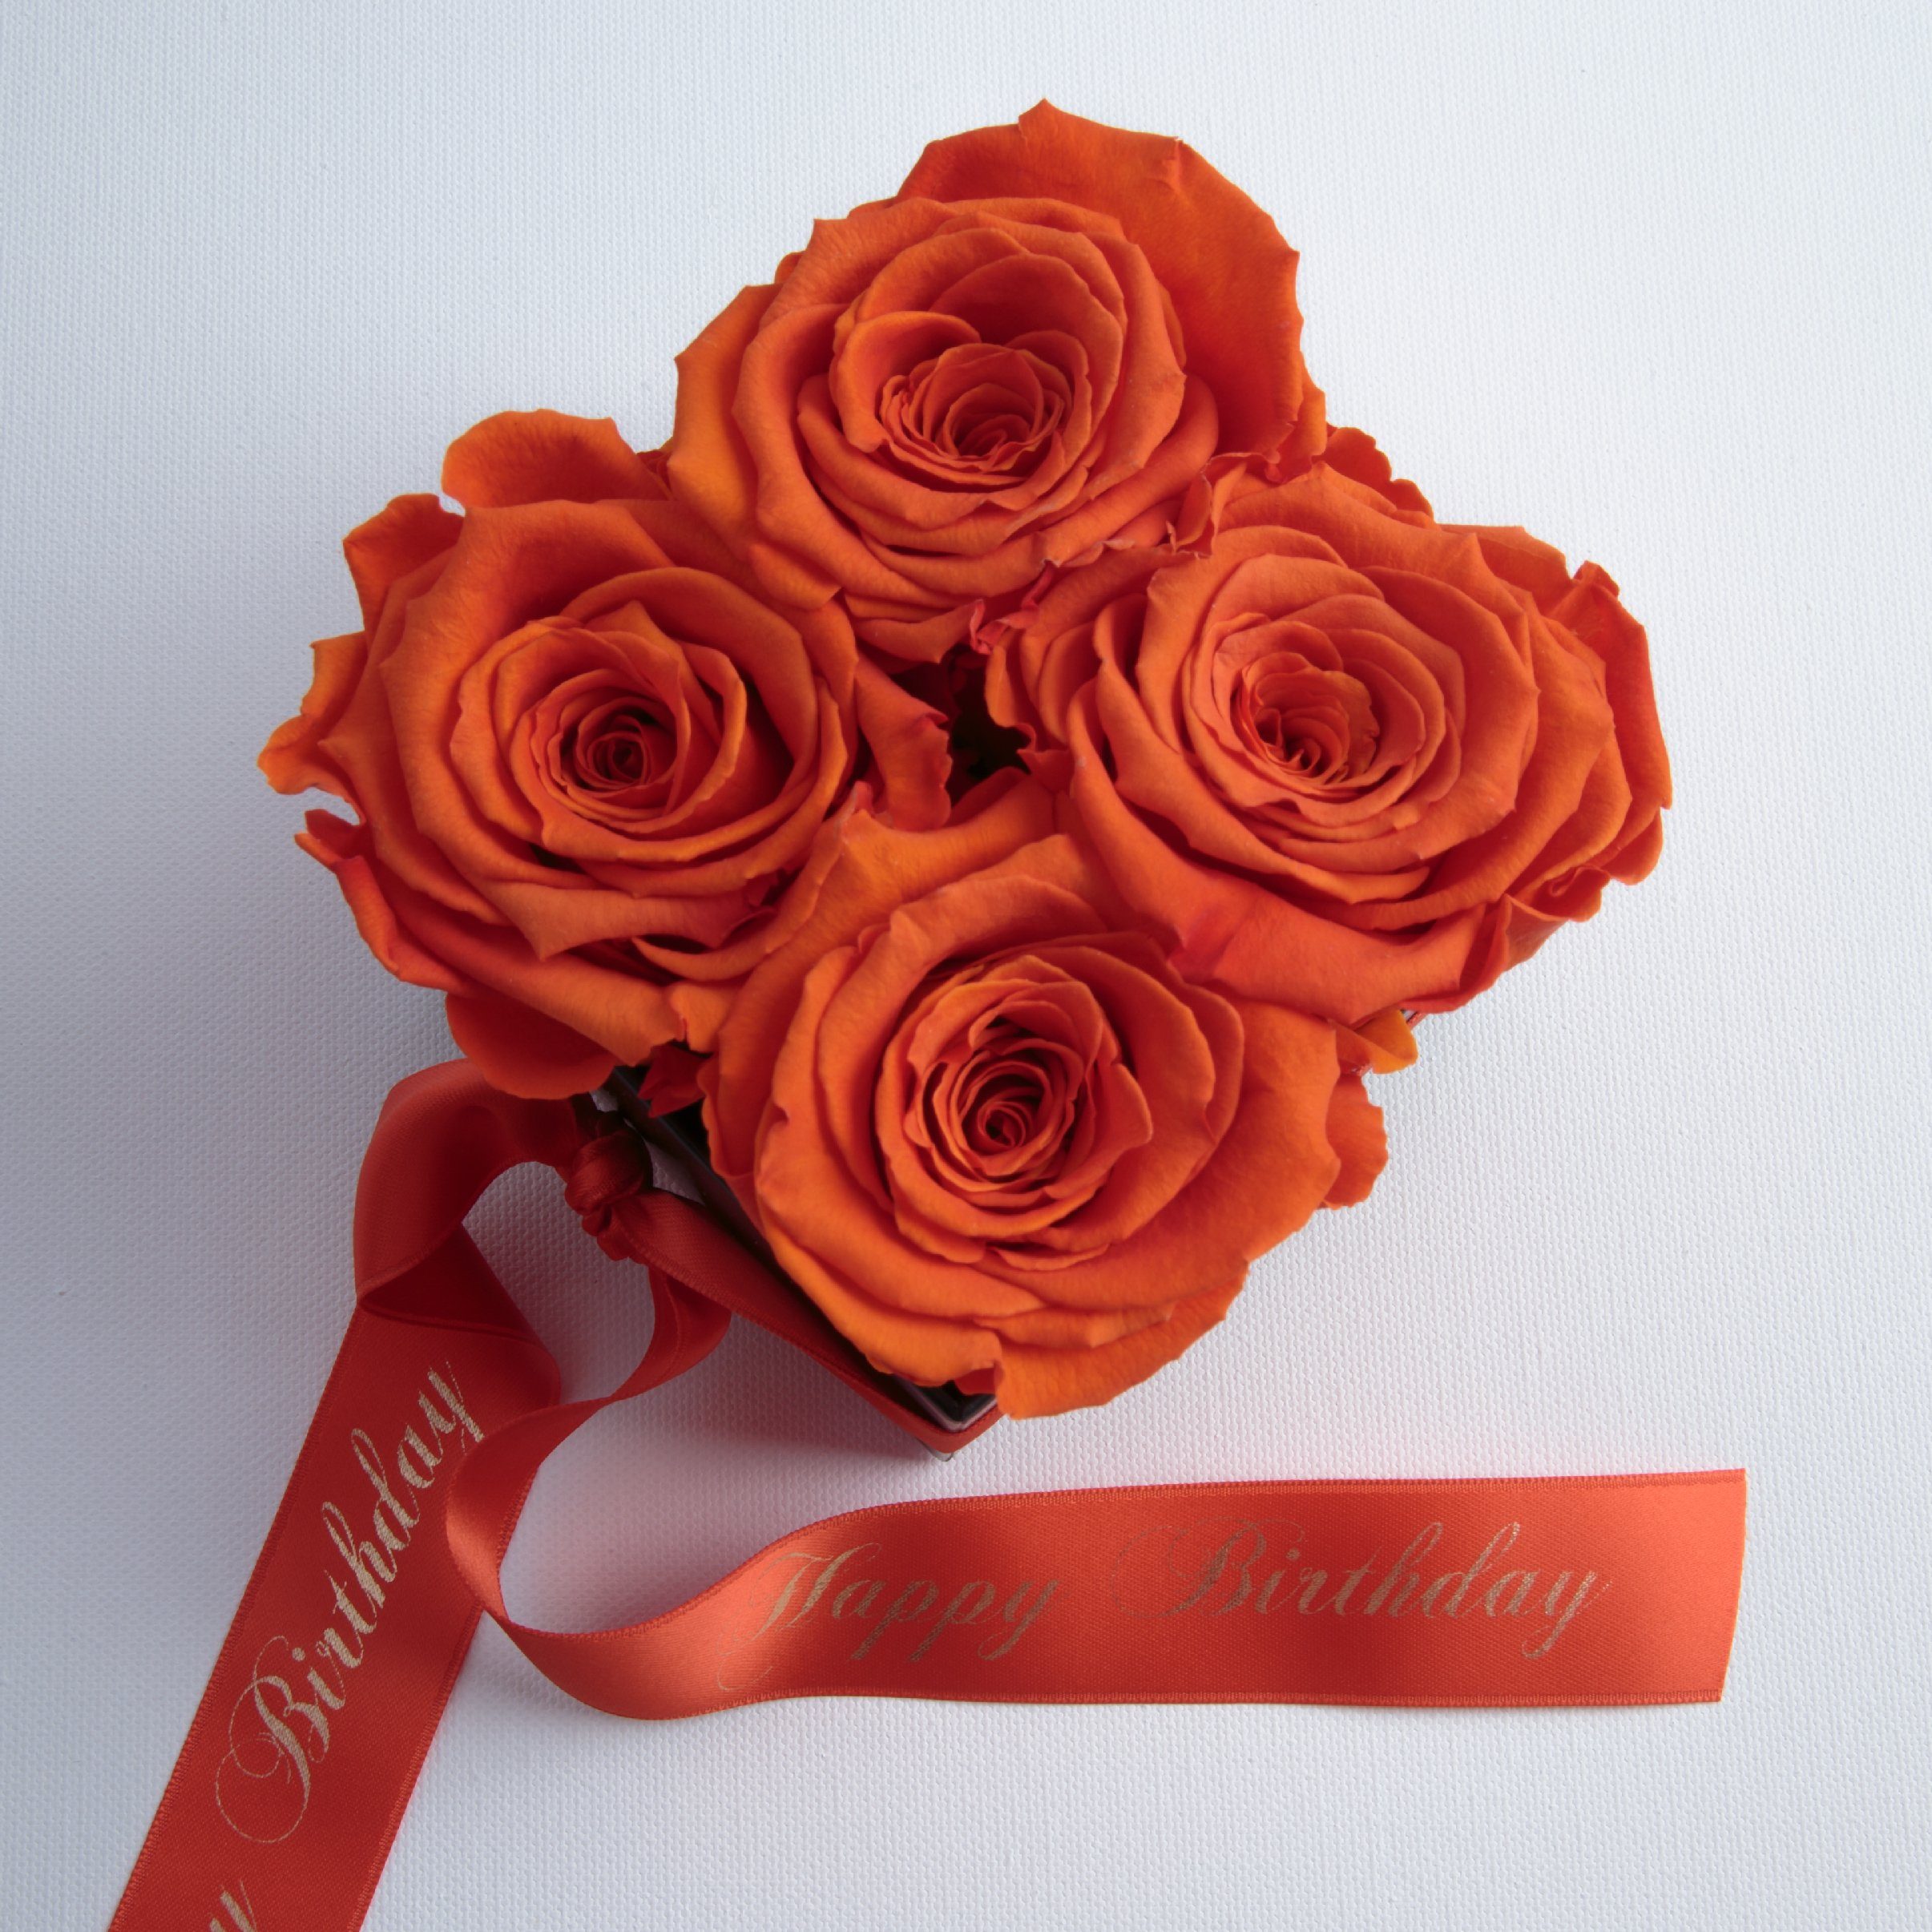 Kunstblume Infinity Rosenbox Happy Frauen orange 8.5 für cm, Rosen Rose, Geschenk echte haltbar ROSEMARIE Geburtstag Birthday SCHULZ 3 Jahre Heidelberg, Höhe